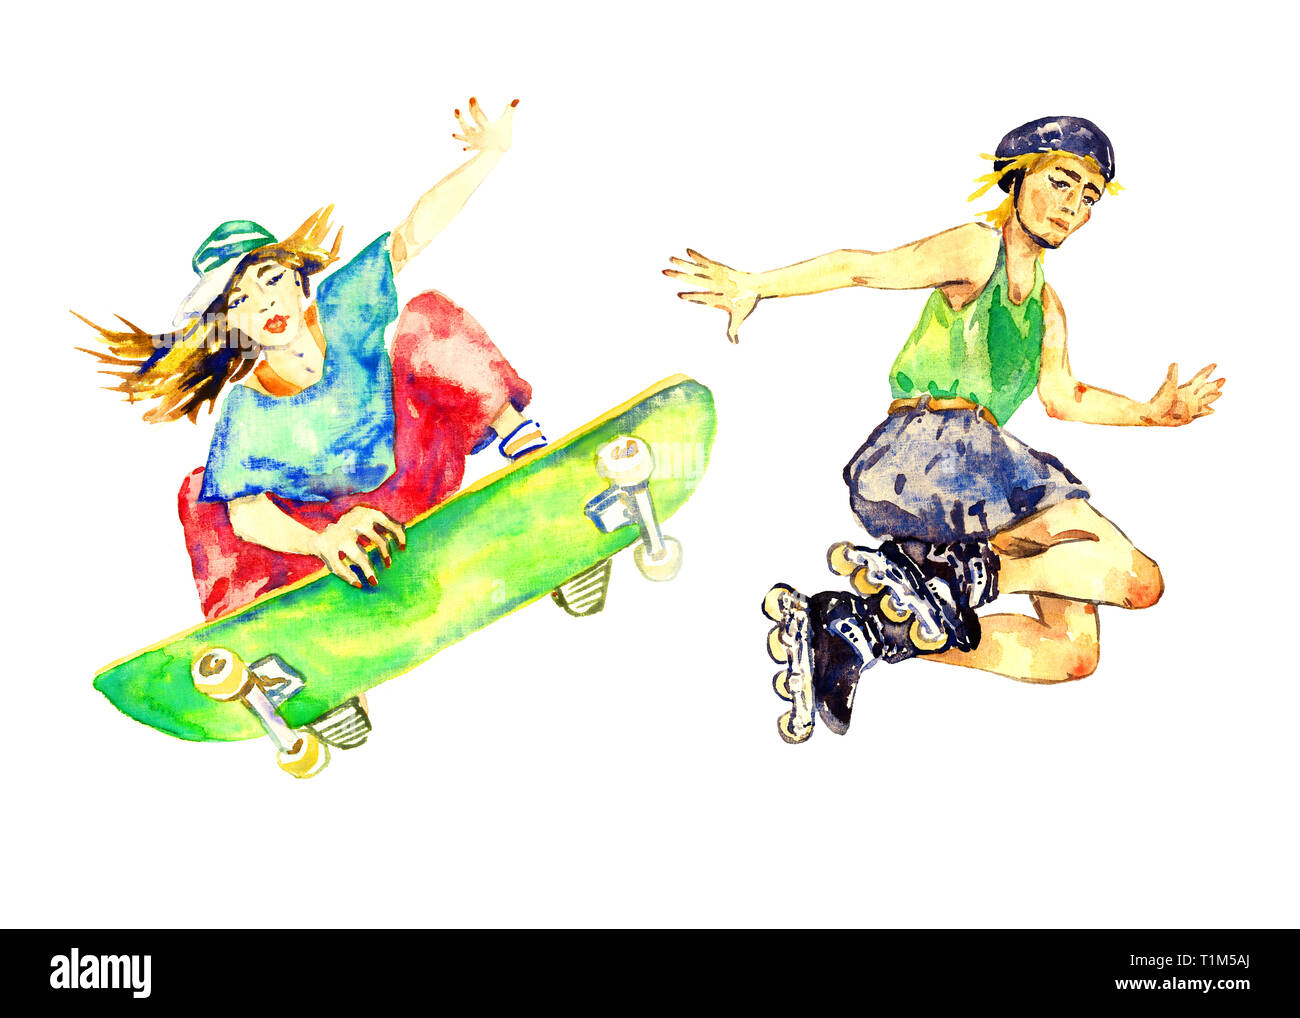 Mädchen springen auf Skateboard und Junge in Rollschuhe, Handgemalten Aquarell Illustration, auf weißem Hintergrund Stockfoto